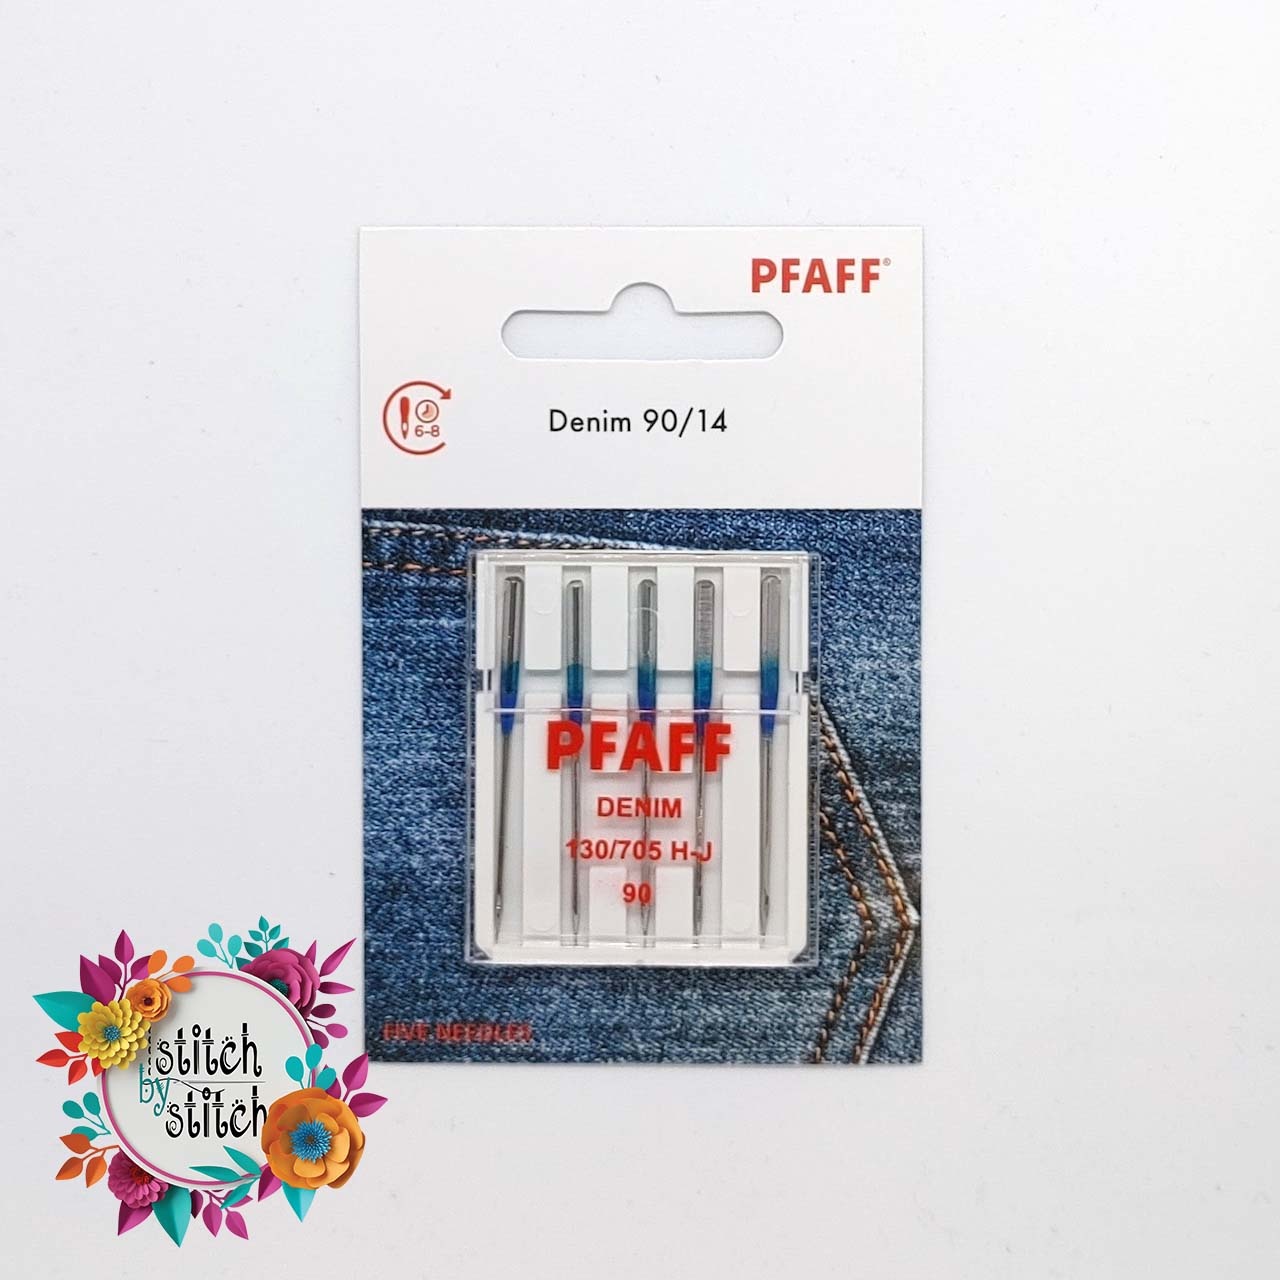 PFAFF Pfaff Denim Needle - Size 90/14 5 pack